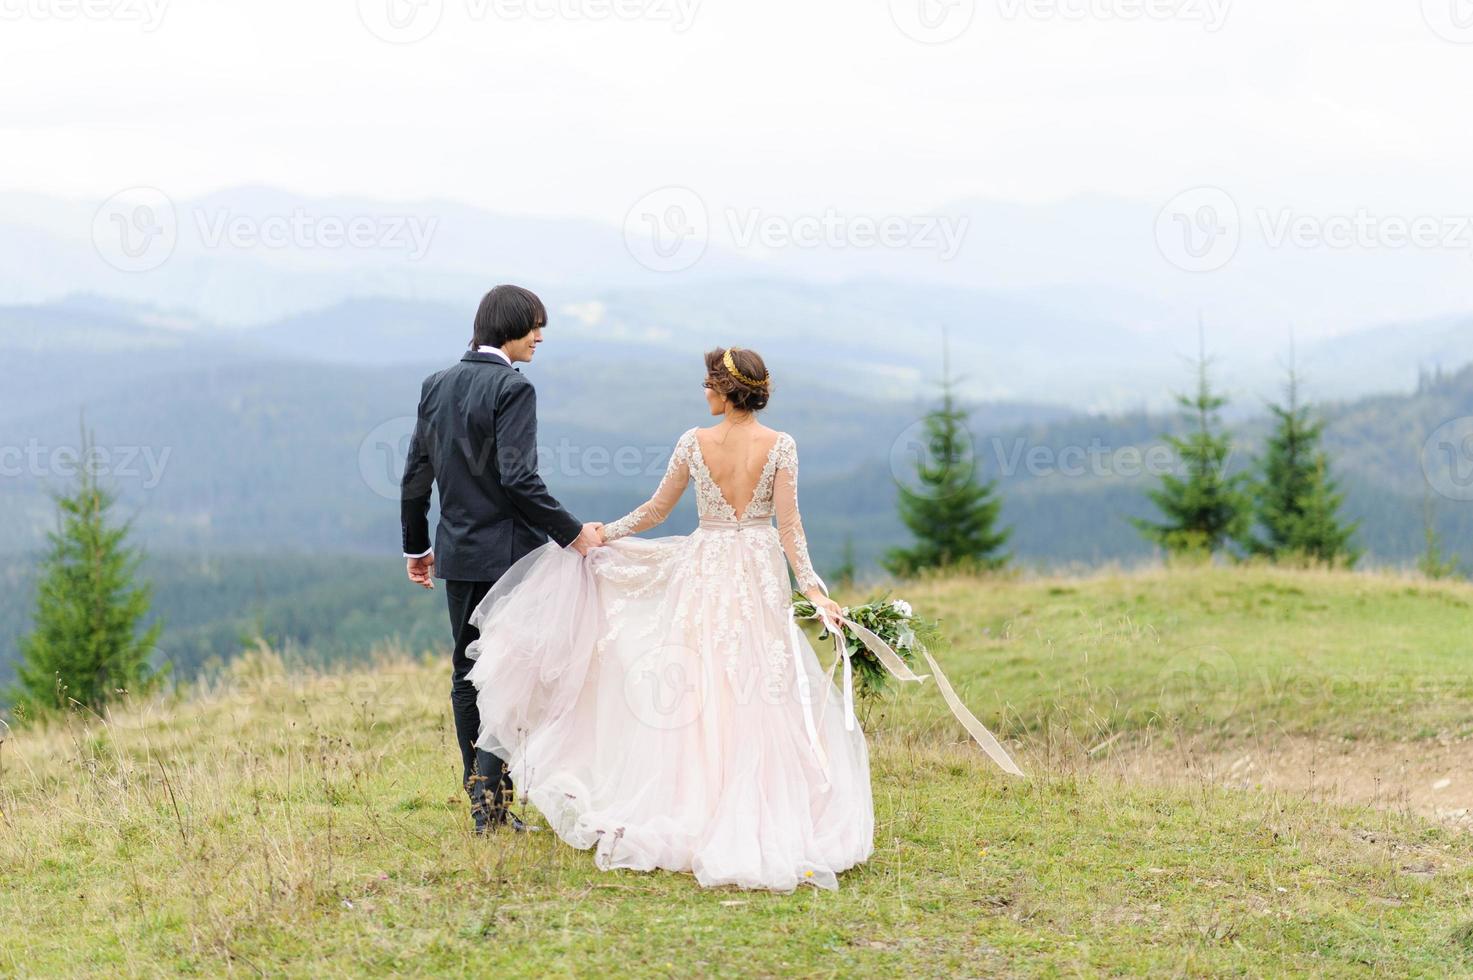 gli sposi camminano per mano sullo sfondo delle montagne. foto del matrimonio.